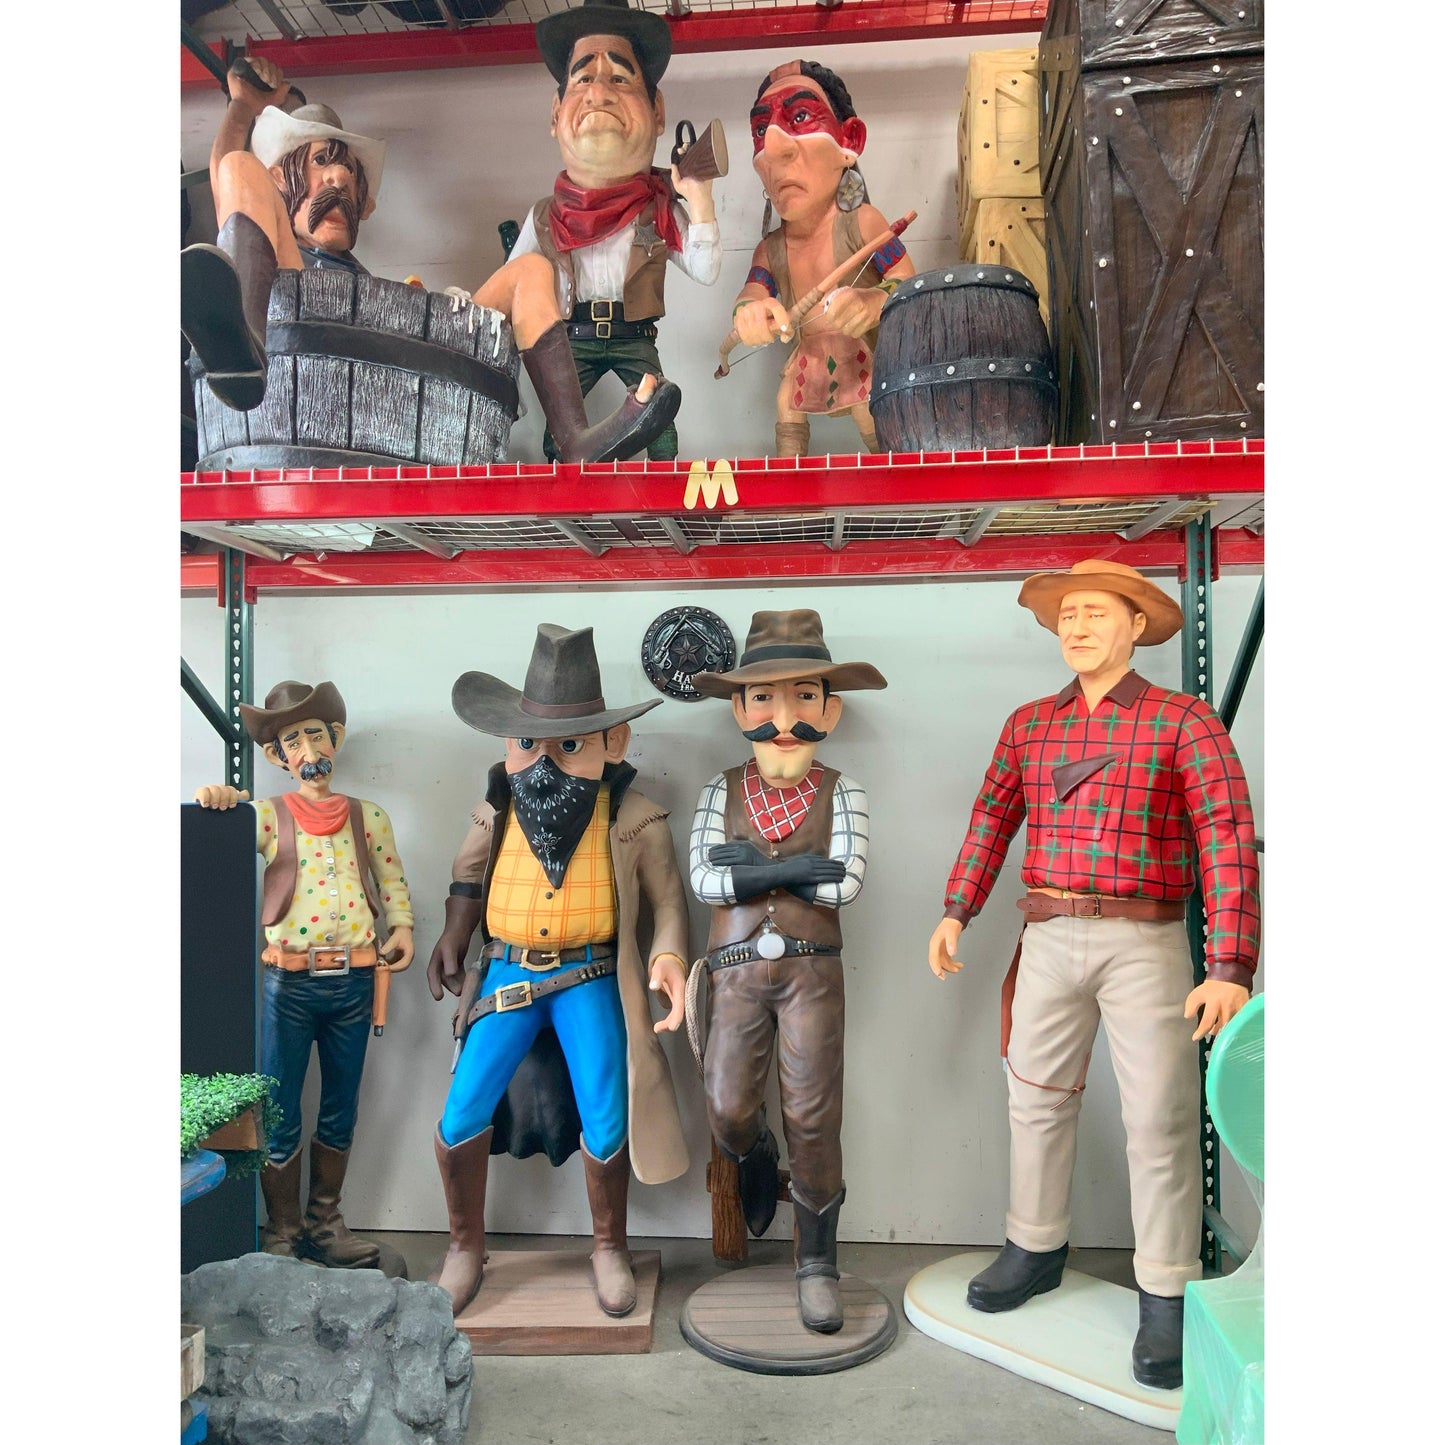 Cowboy Comic Statue - LM Treasures Prop Rentals 